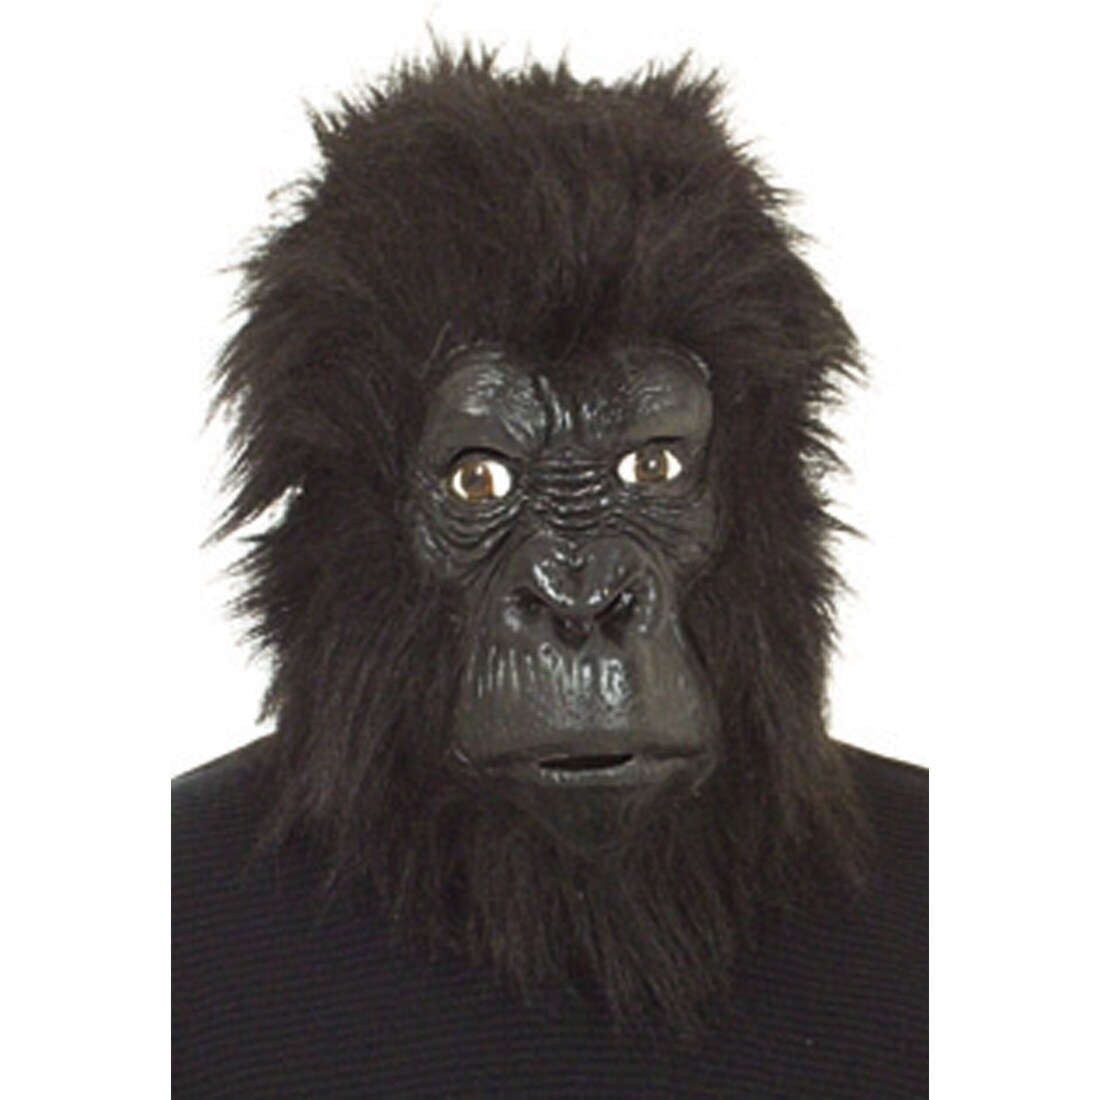 Выступление гориллы в маске. Маска гориллы. Пп96 маска горилла злая. Резиновая маска гориллы. Страшная маска гориллы.